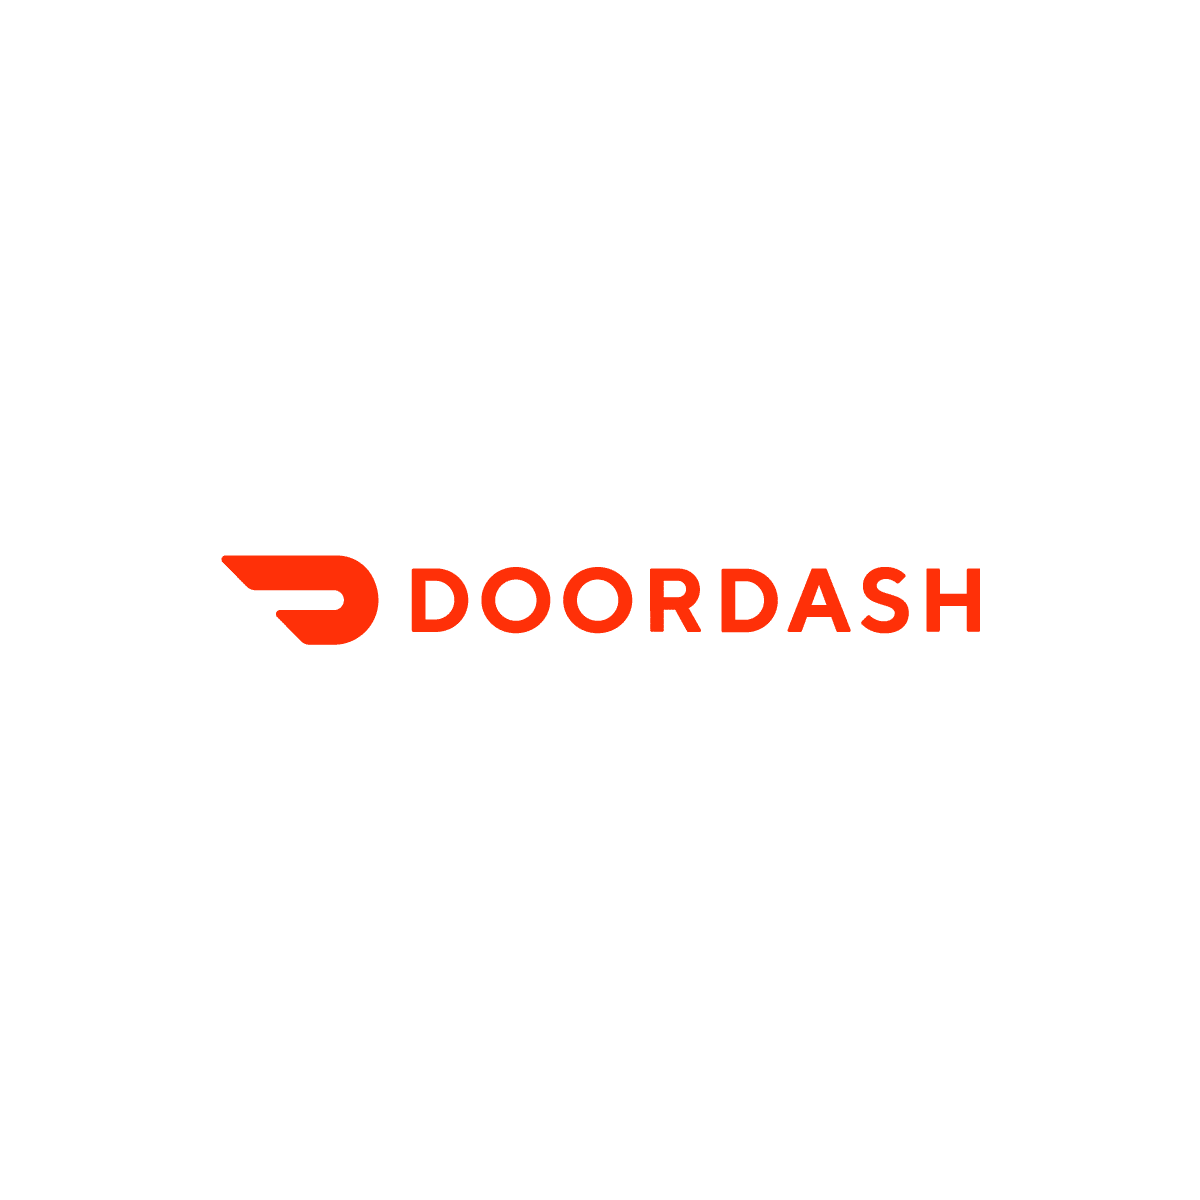 DoorDash Promo Code For $5 Off